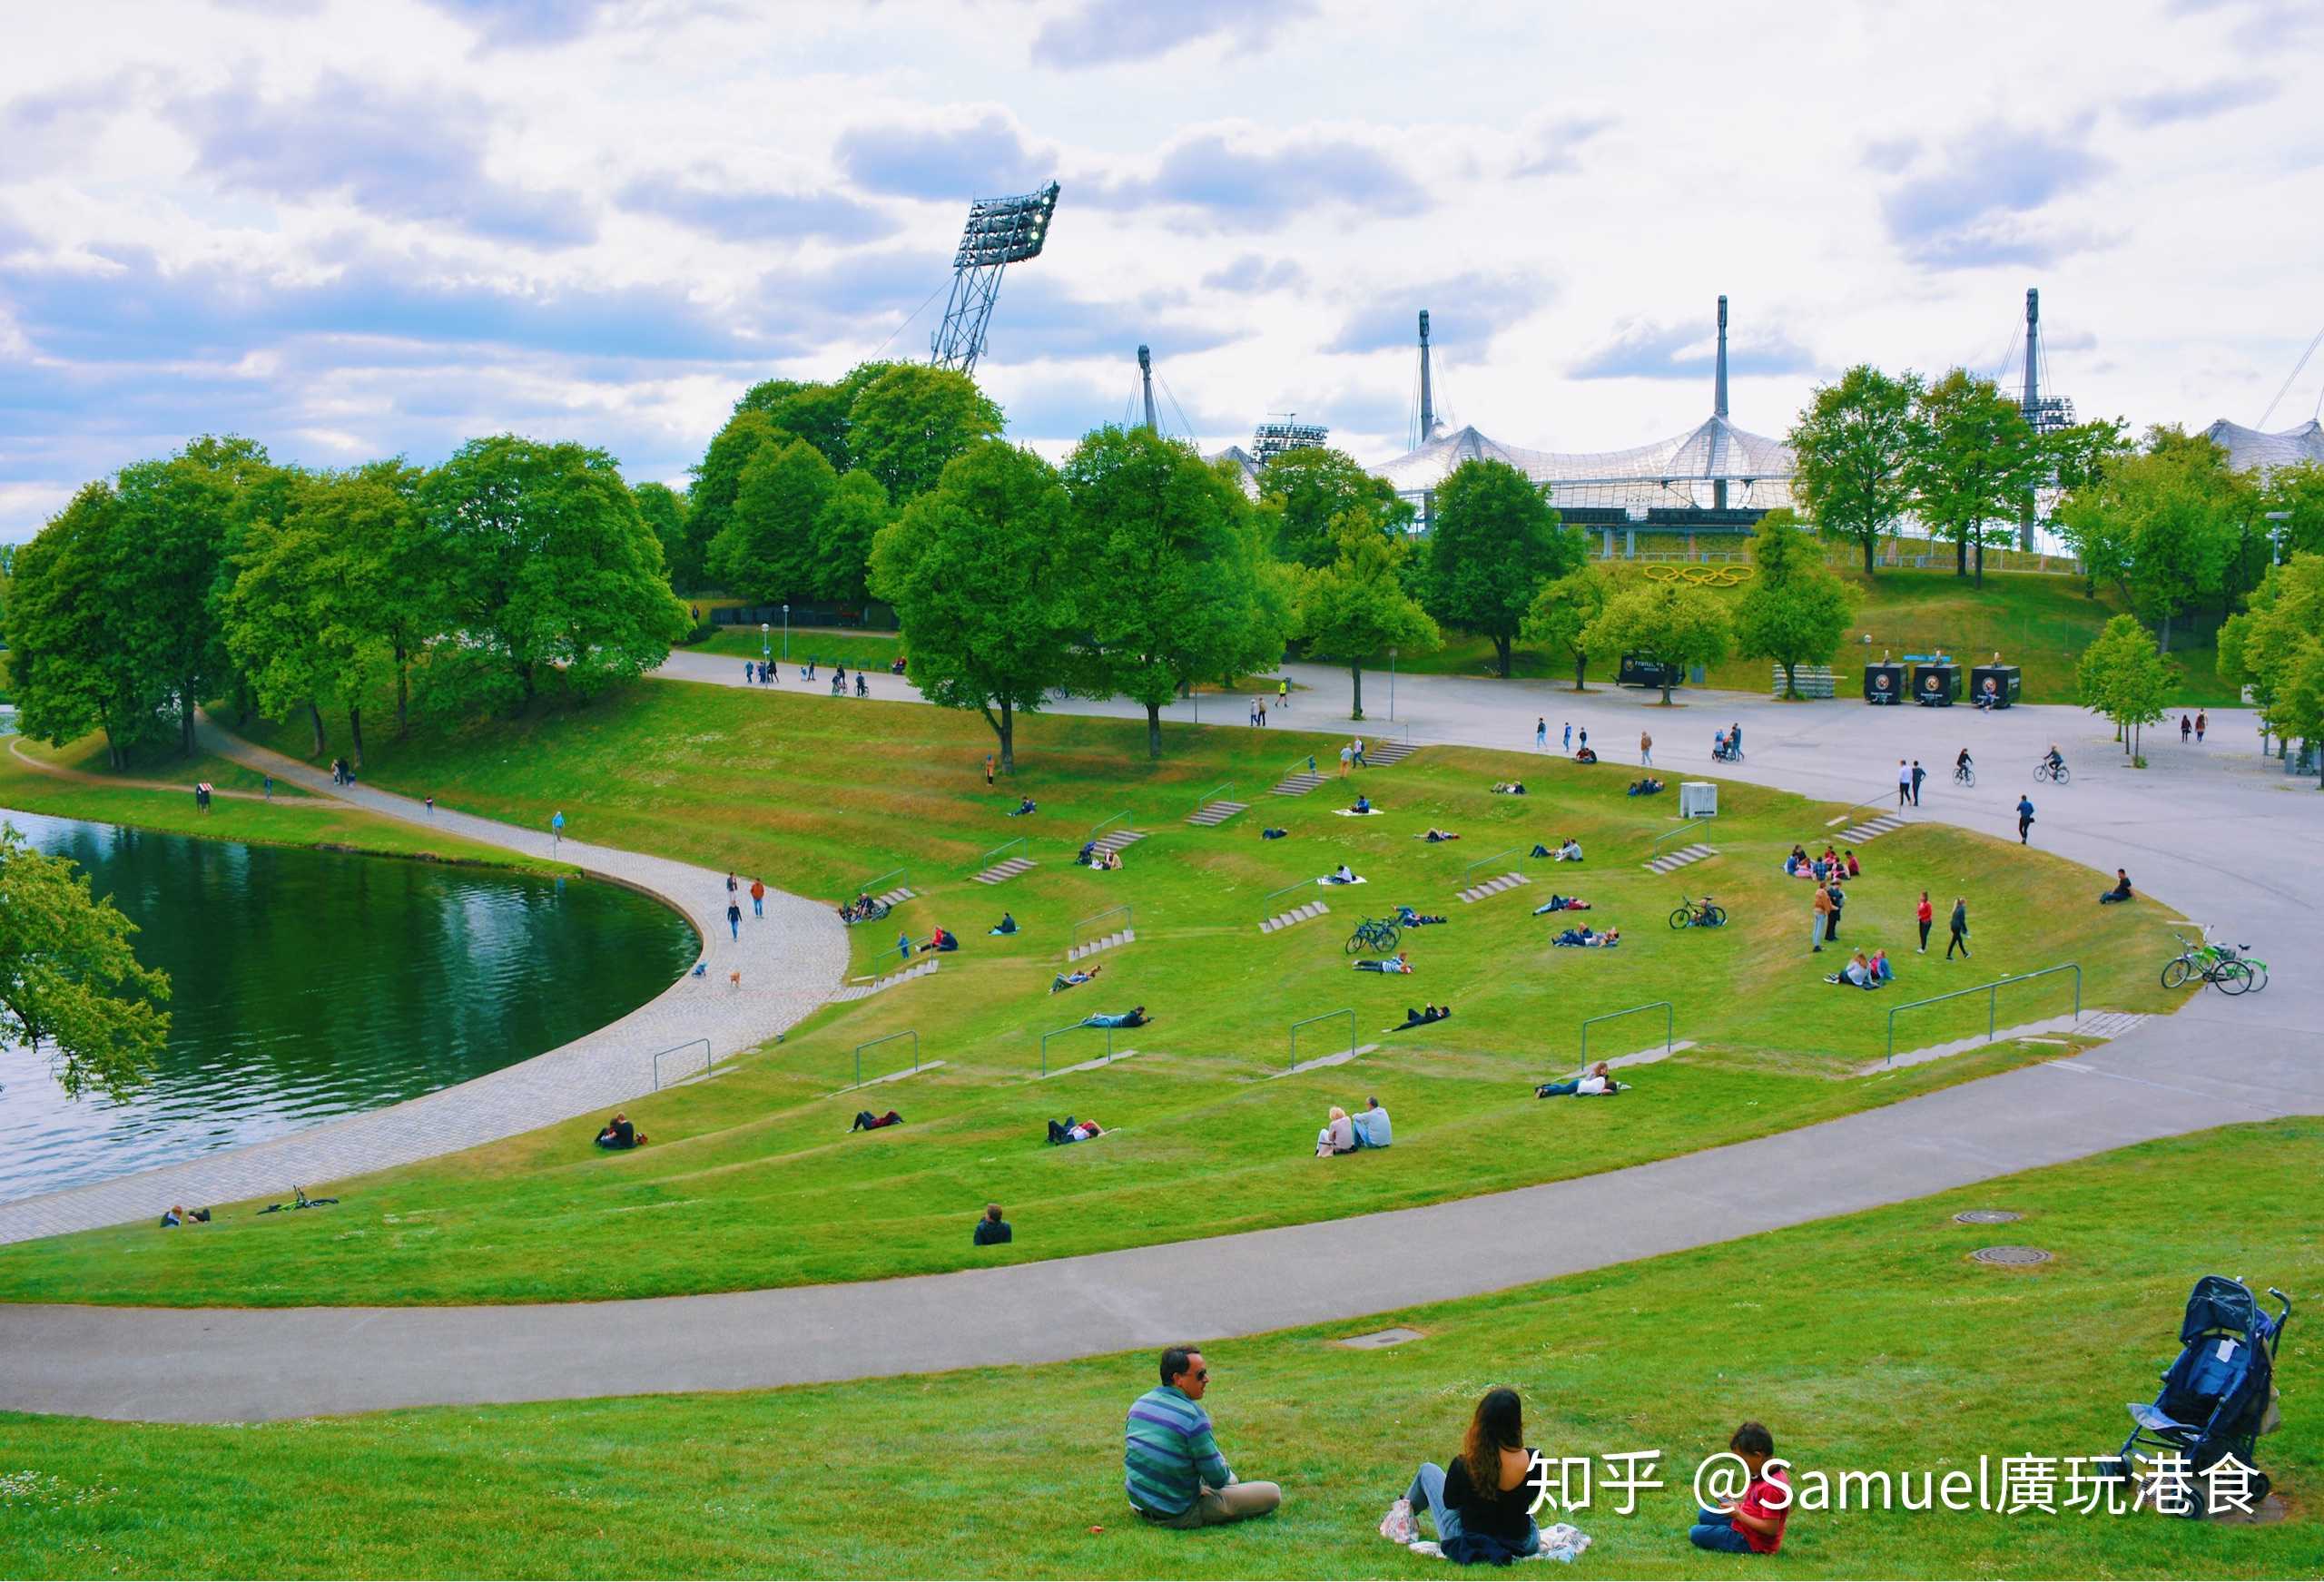 慕尼黑奥林匹克公园,集运动,休闲,放松,浪漫标签于一身,是慕尼黑城市